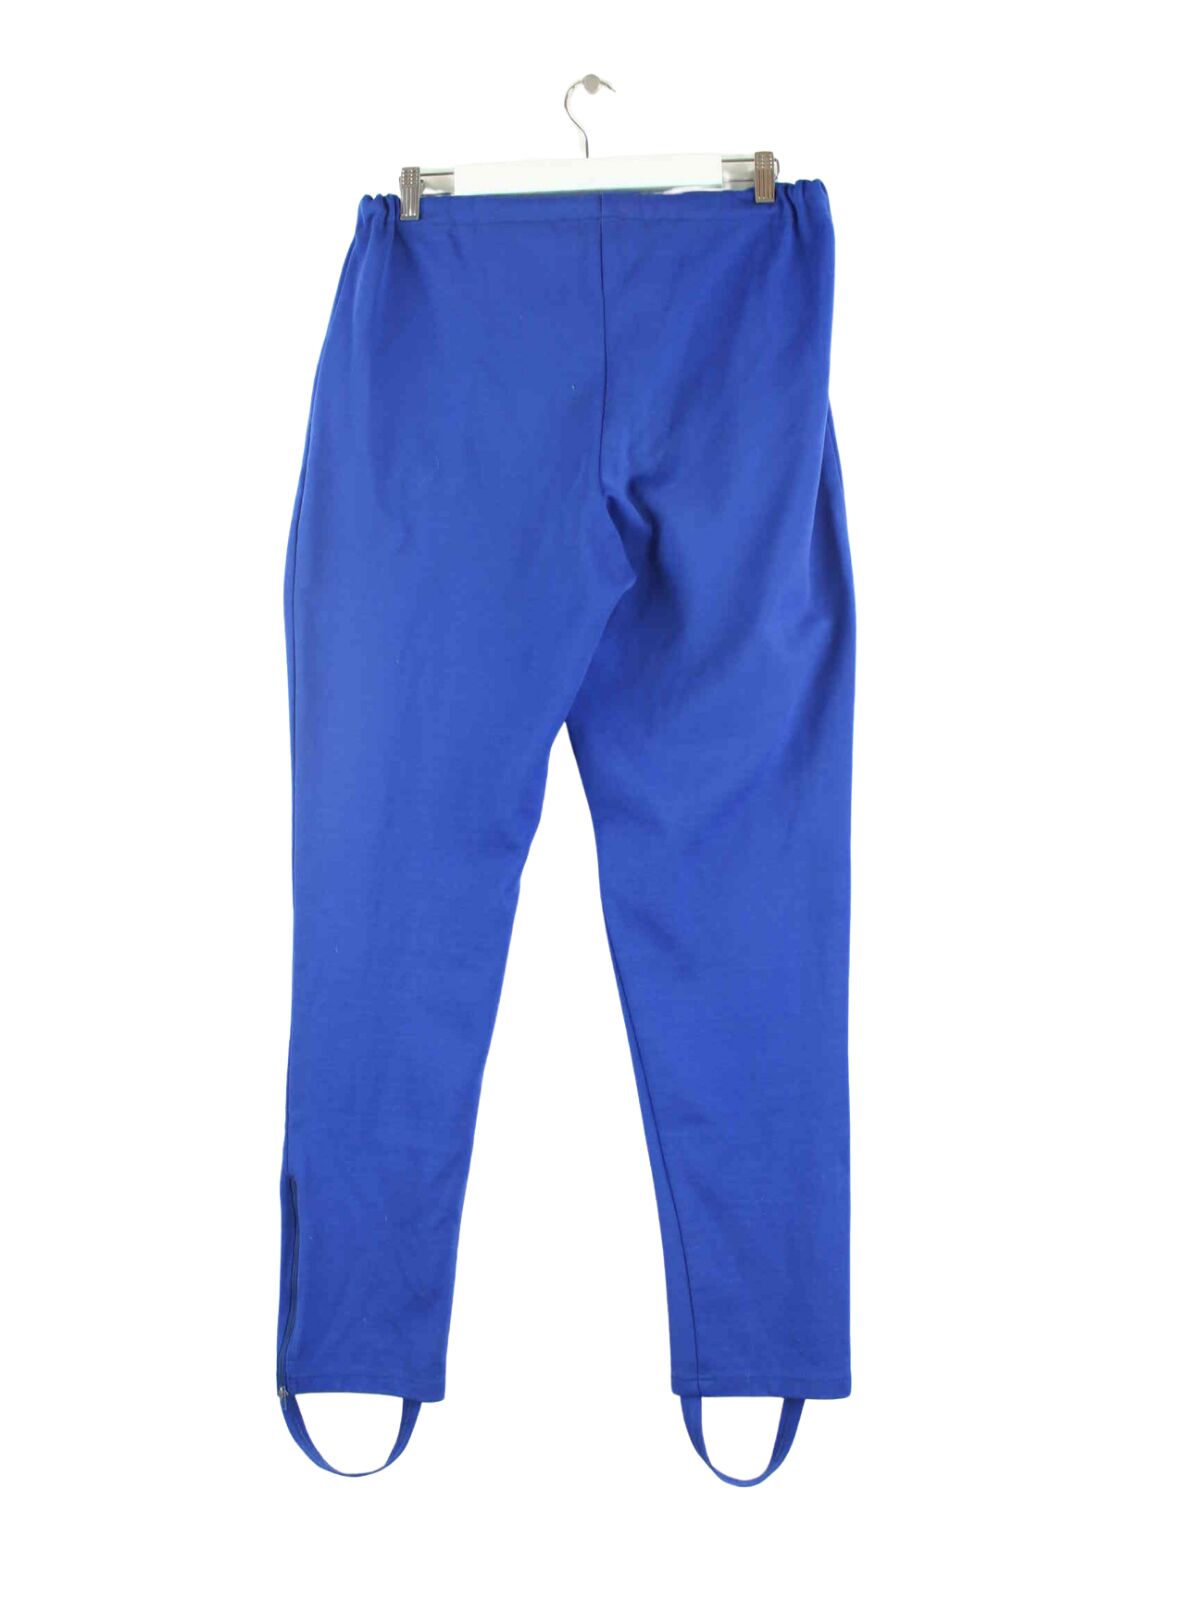 Adidas 90s Vintage Embroidered Track Pants Blau S (back image)